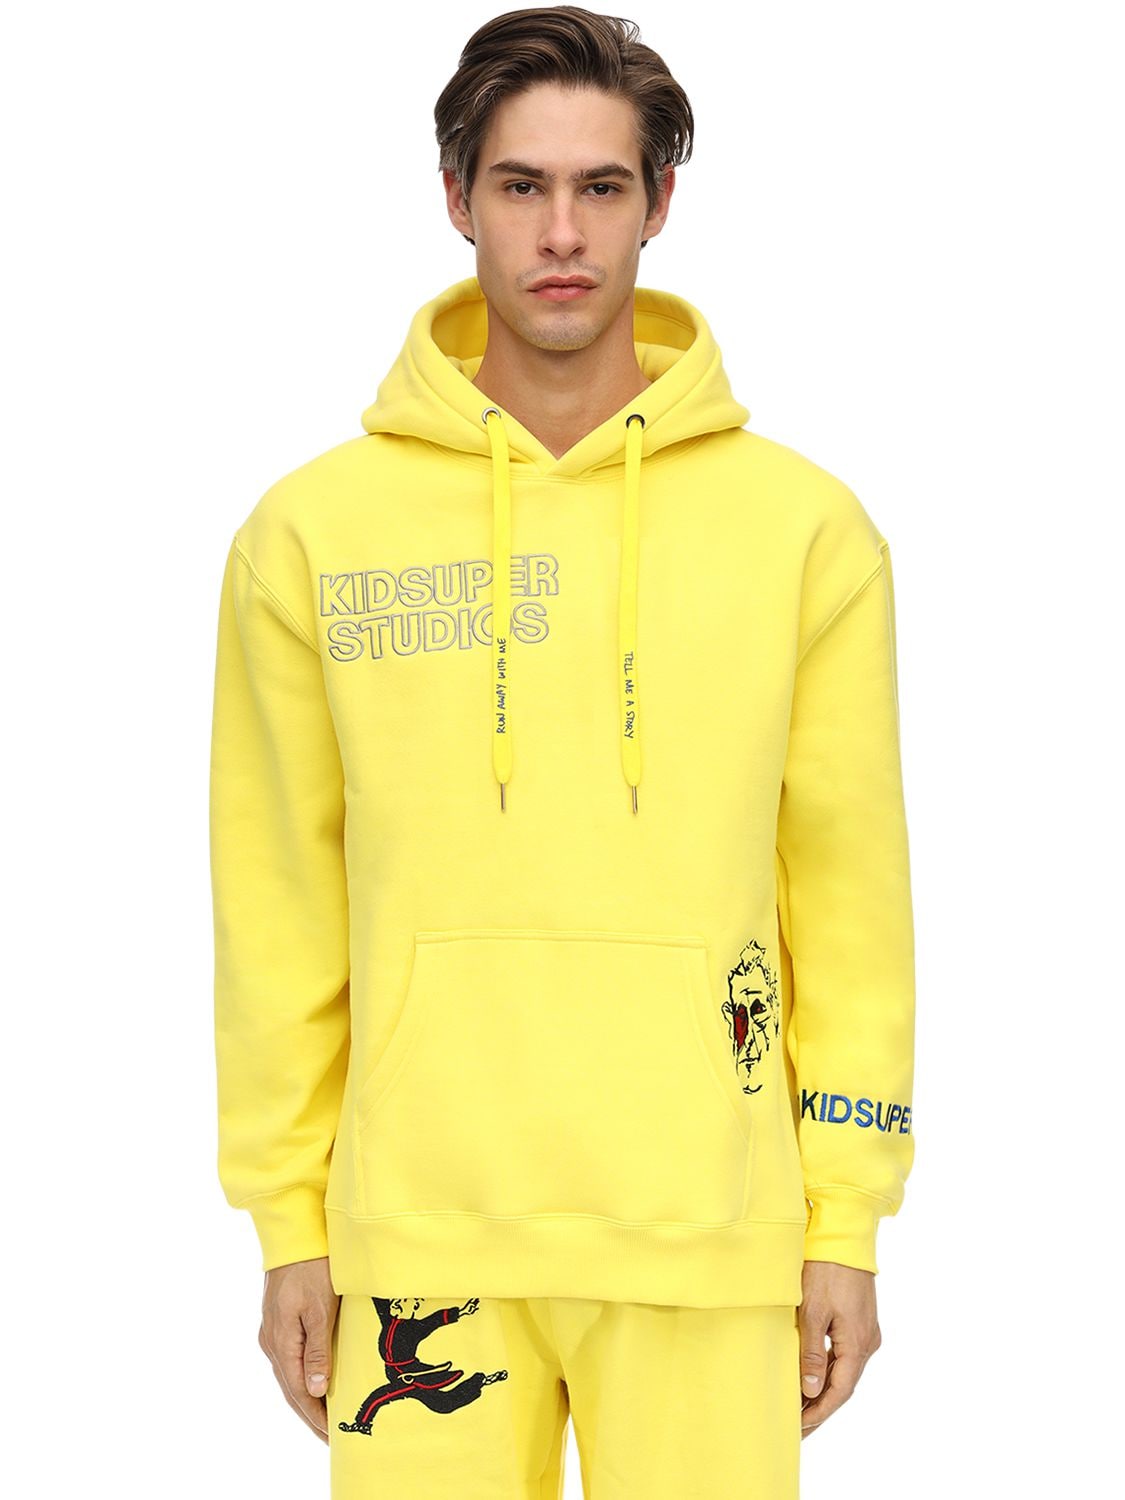 Kidsuper Super Cotton Sweatshirt Hoodie In Neon Yellow